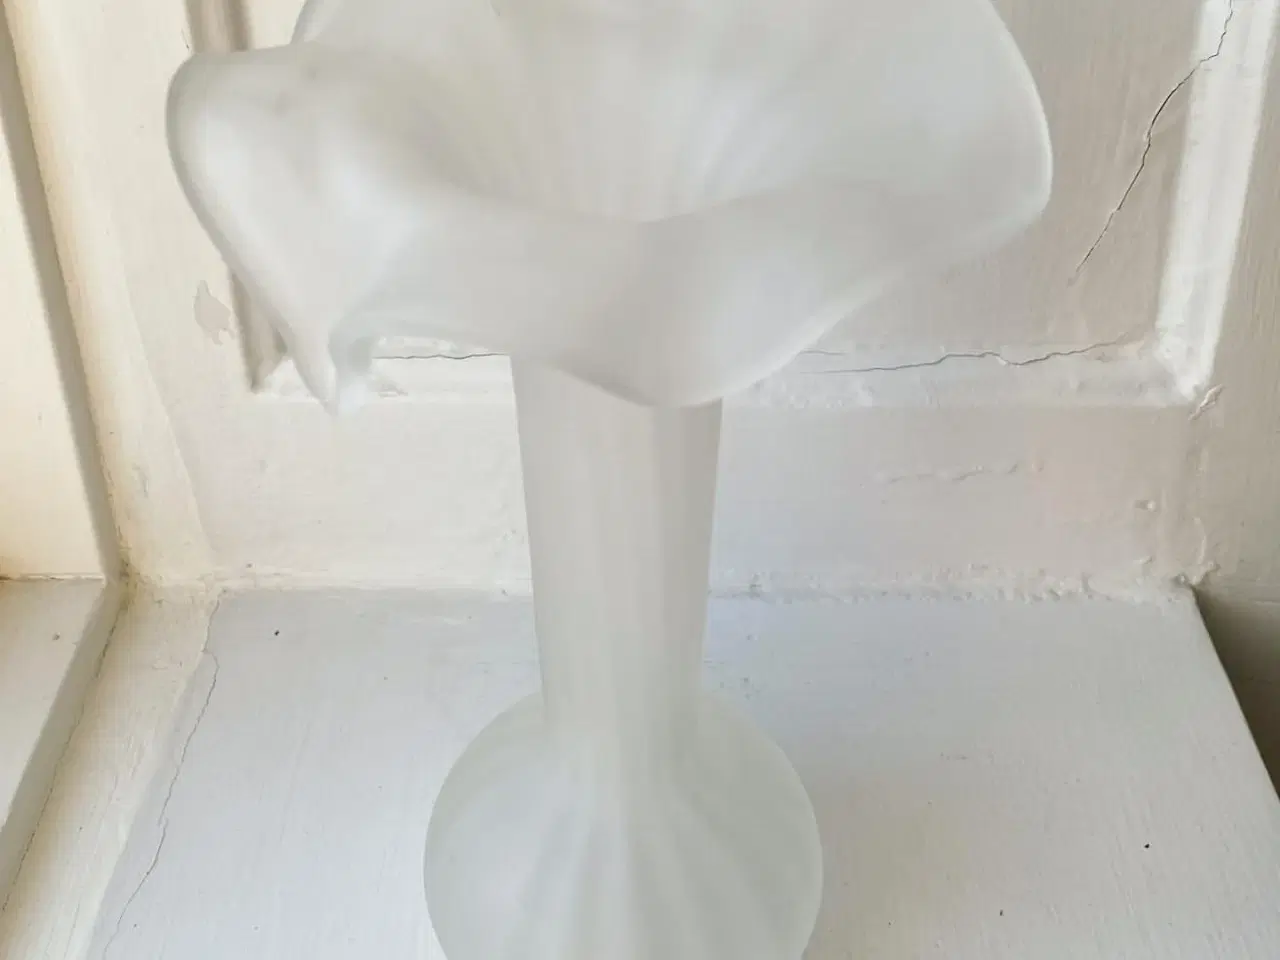 Billede 5 - Hvidt glas, løgformet m flæser, syrebehandlet